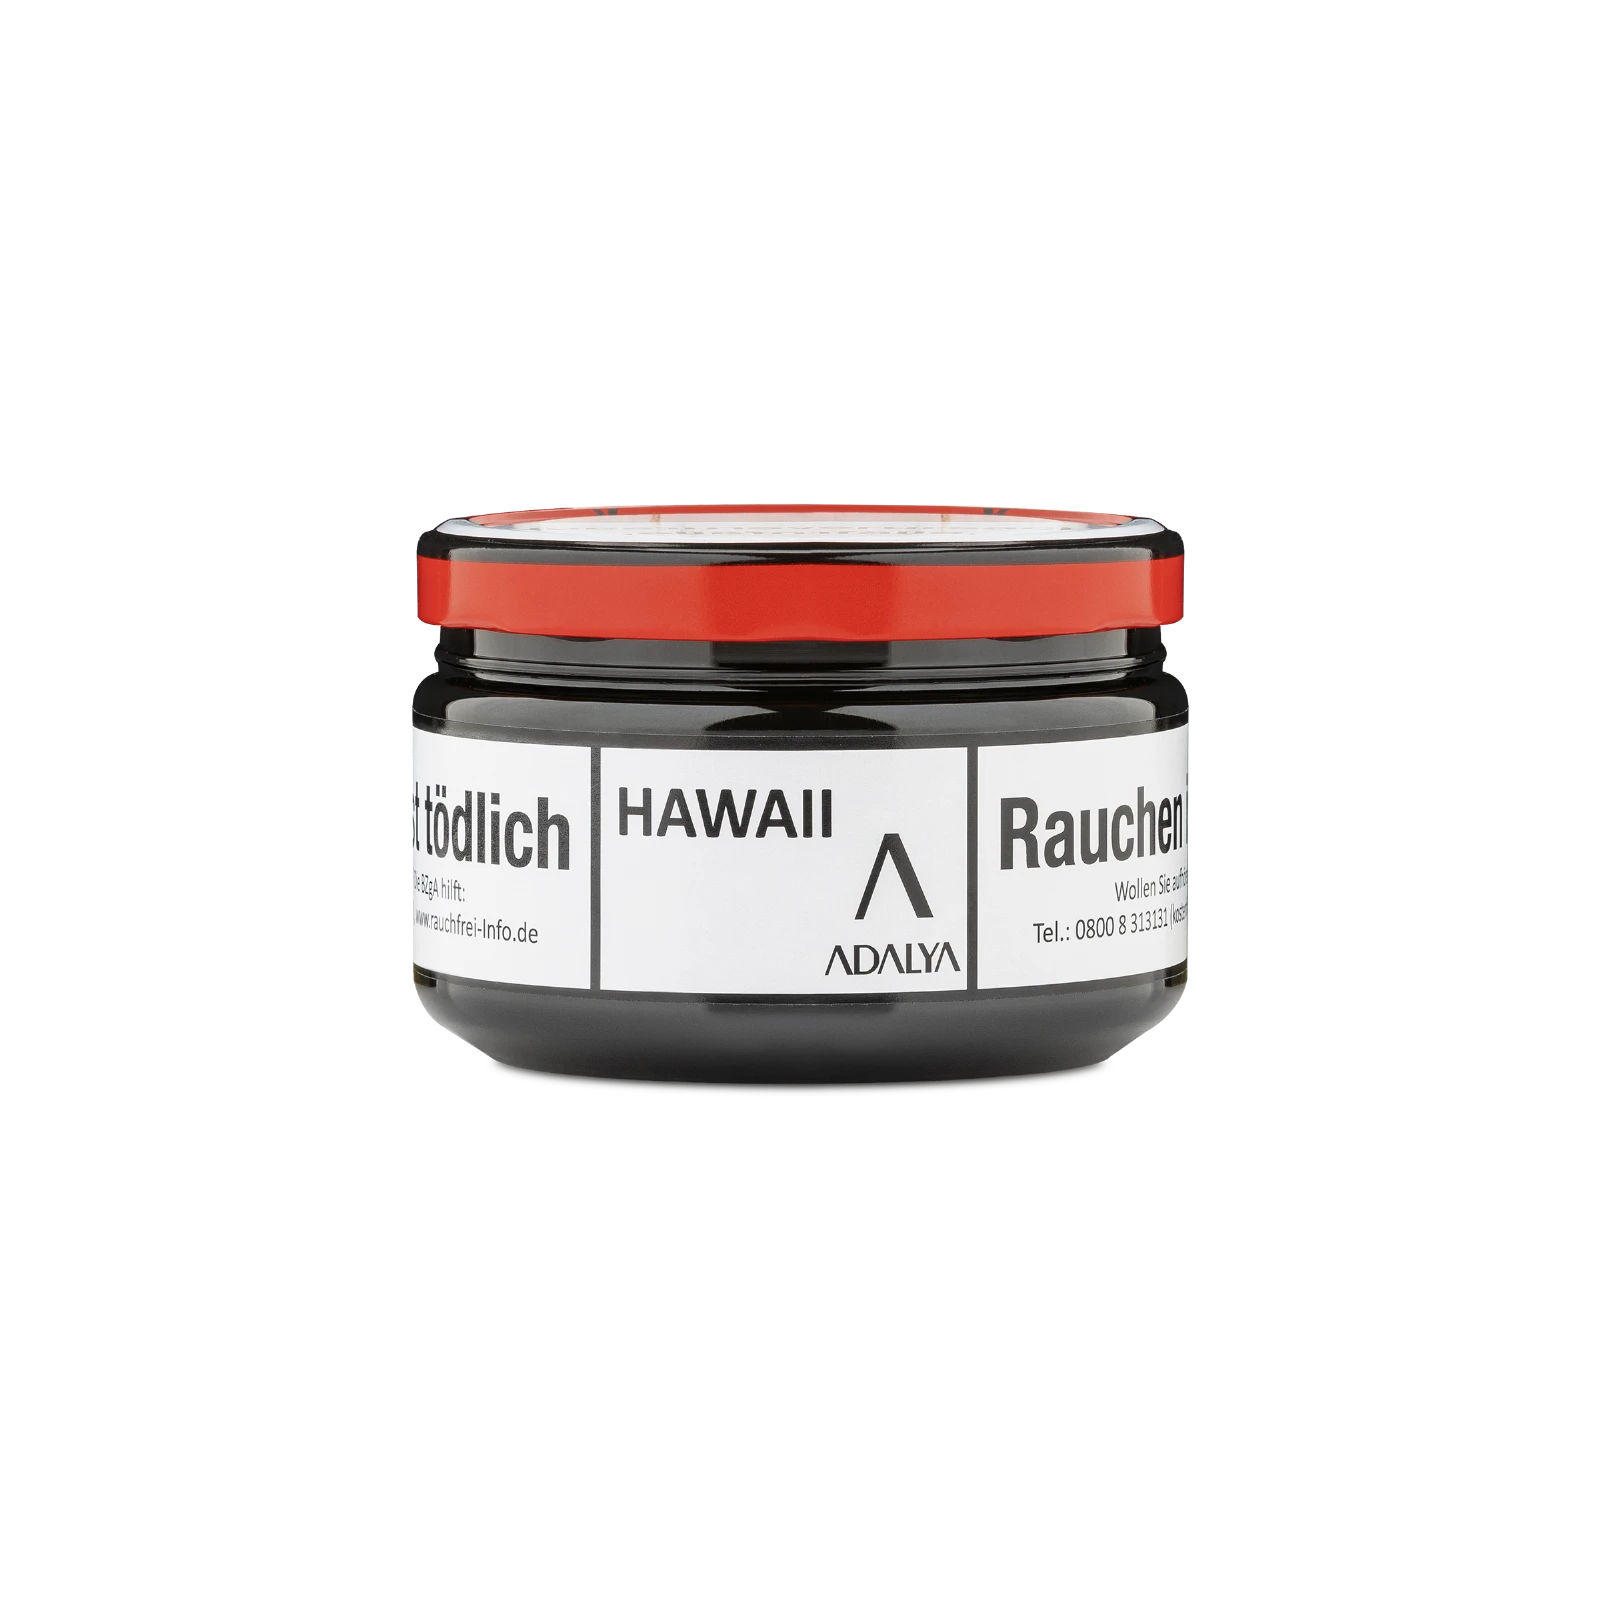 Adalya Dry Base mit Aroma Hawai 100 g | Pfeifentabak günstig kaufen 1